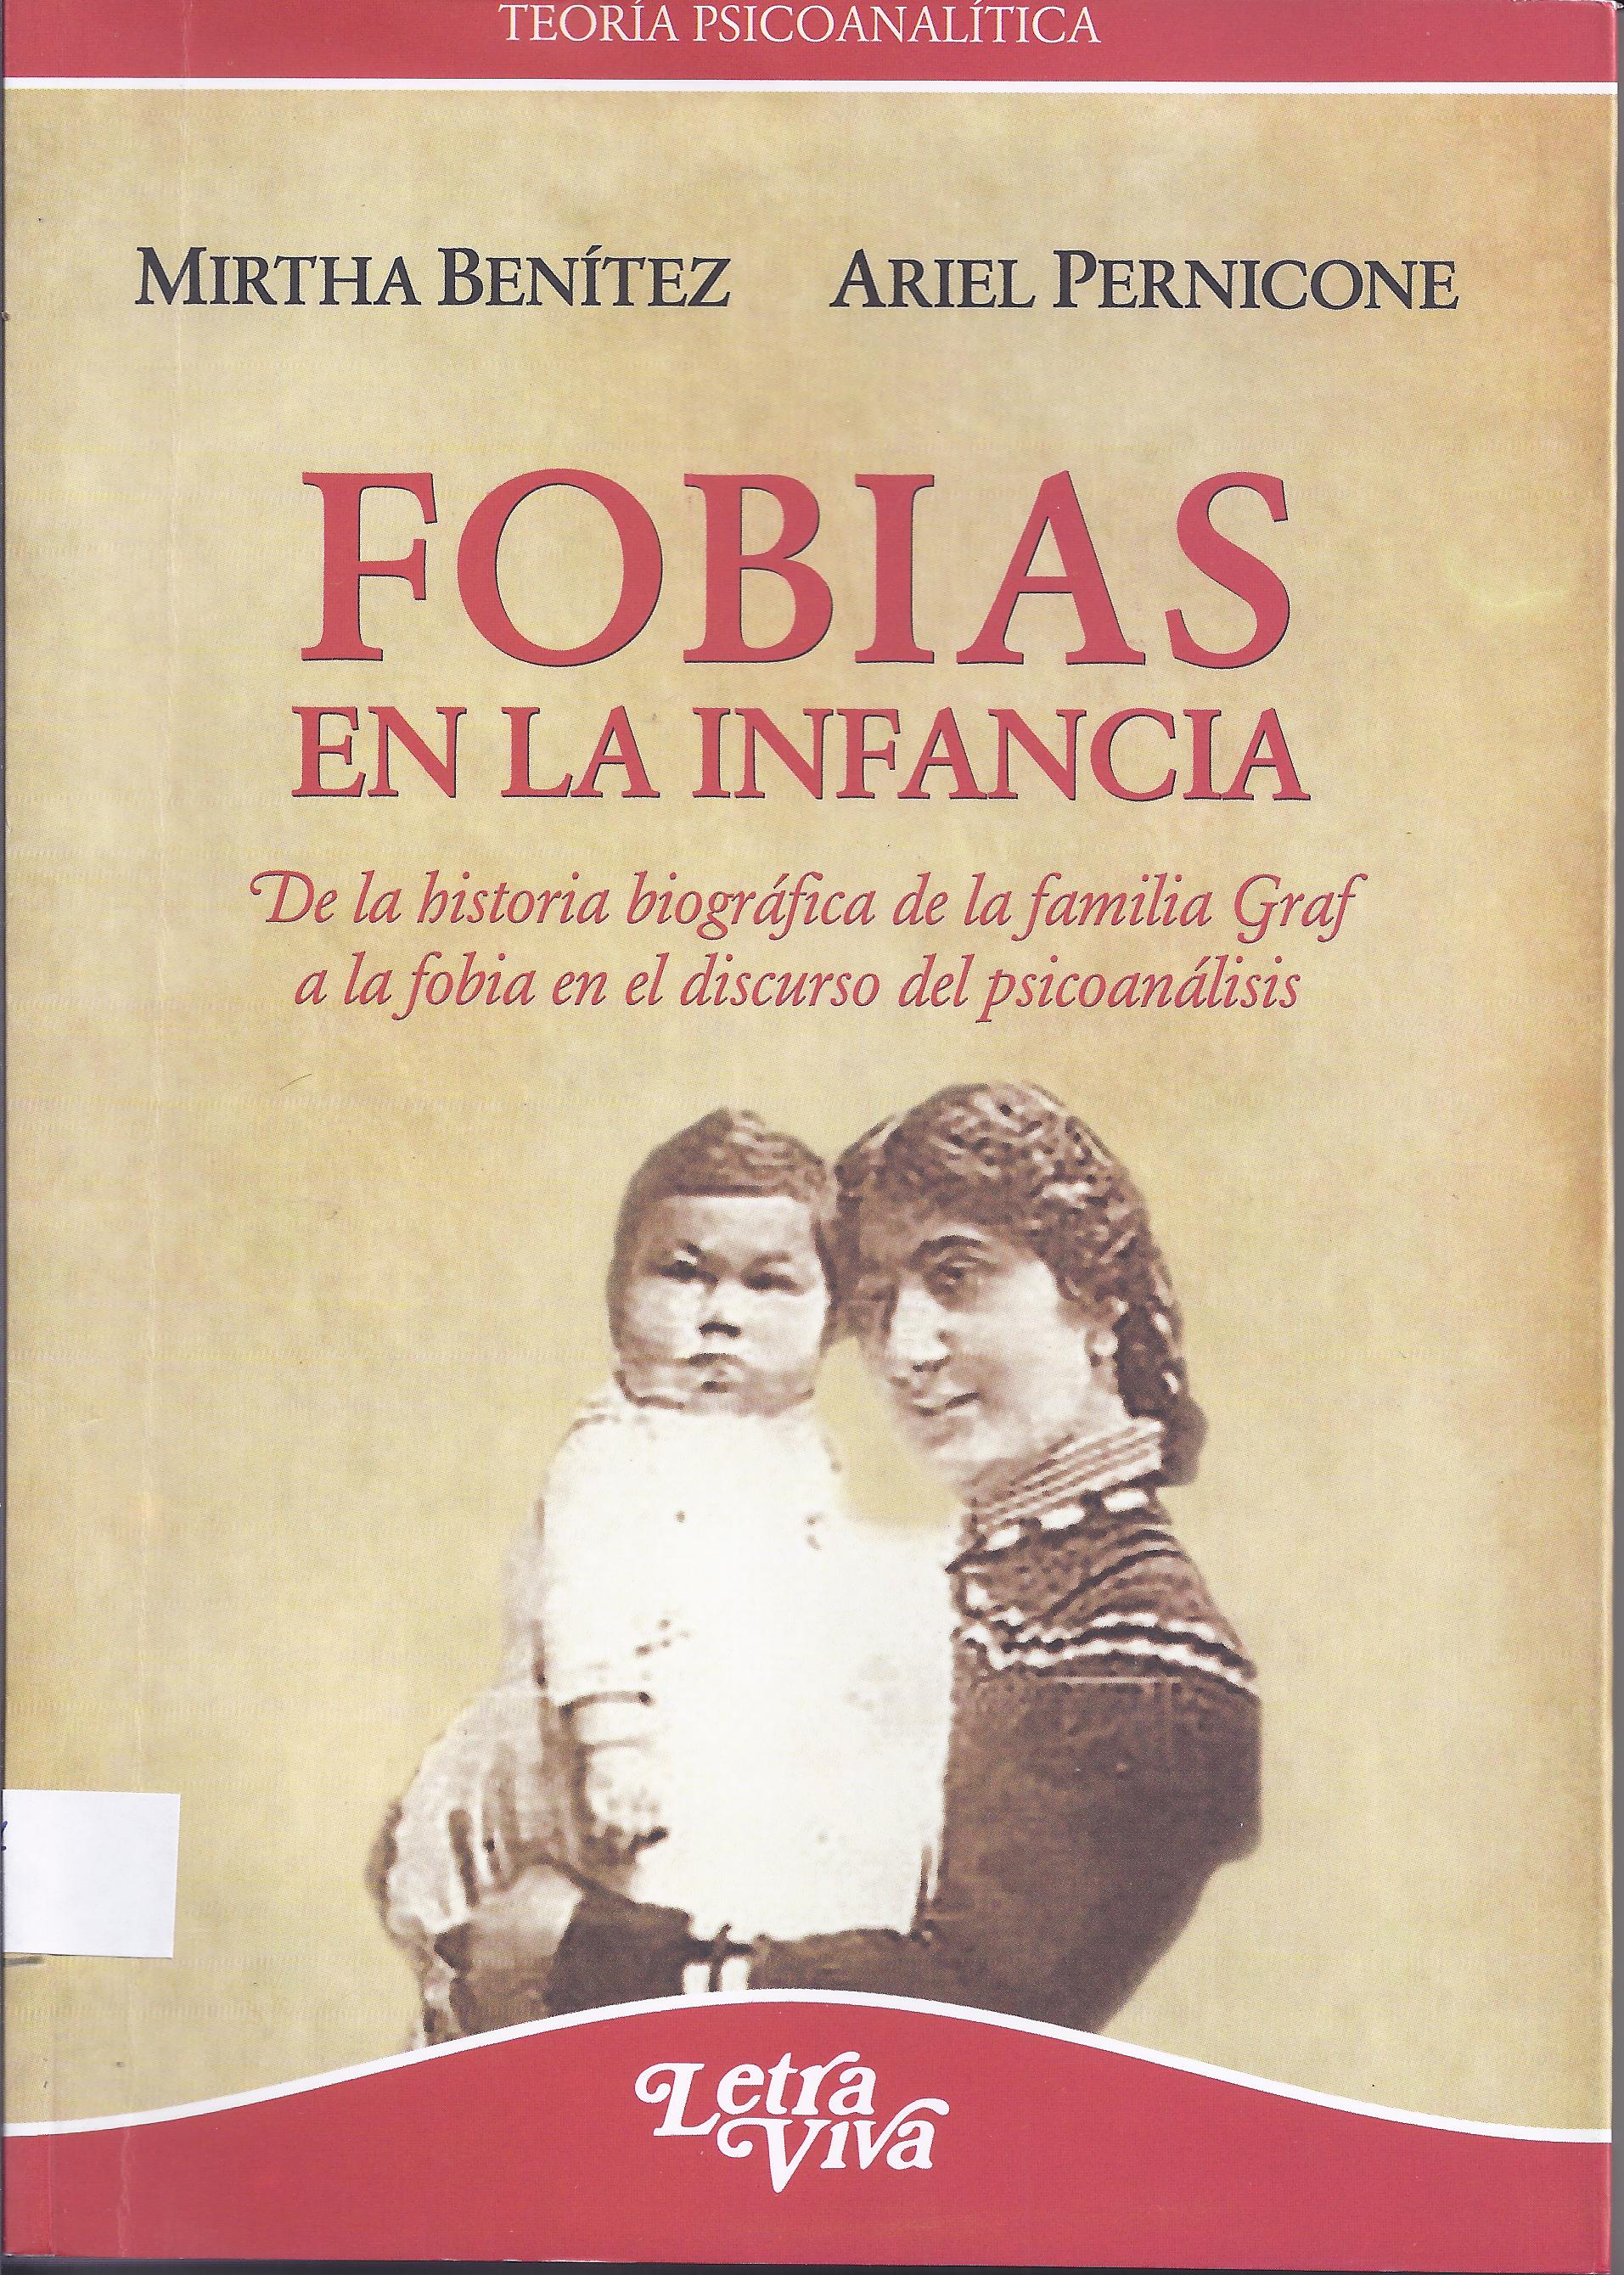 Fobias en la infancia. De la historia biográfica de la familia Grag a la fobia en el discurso del psicoanálisis.